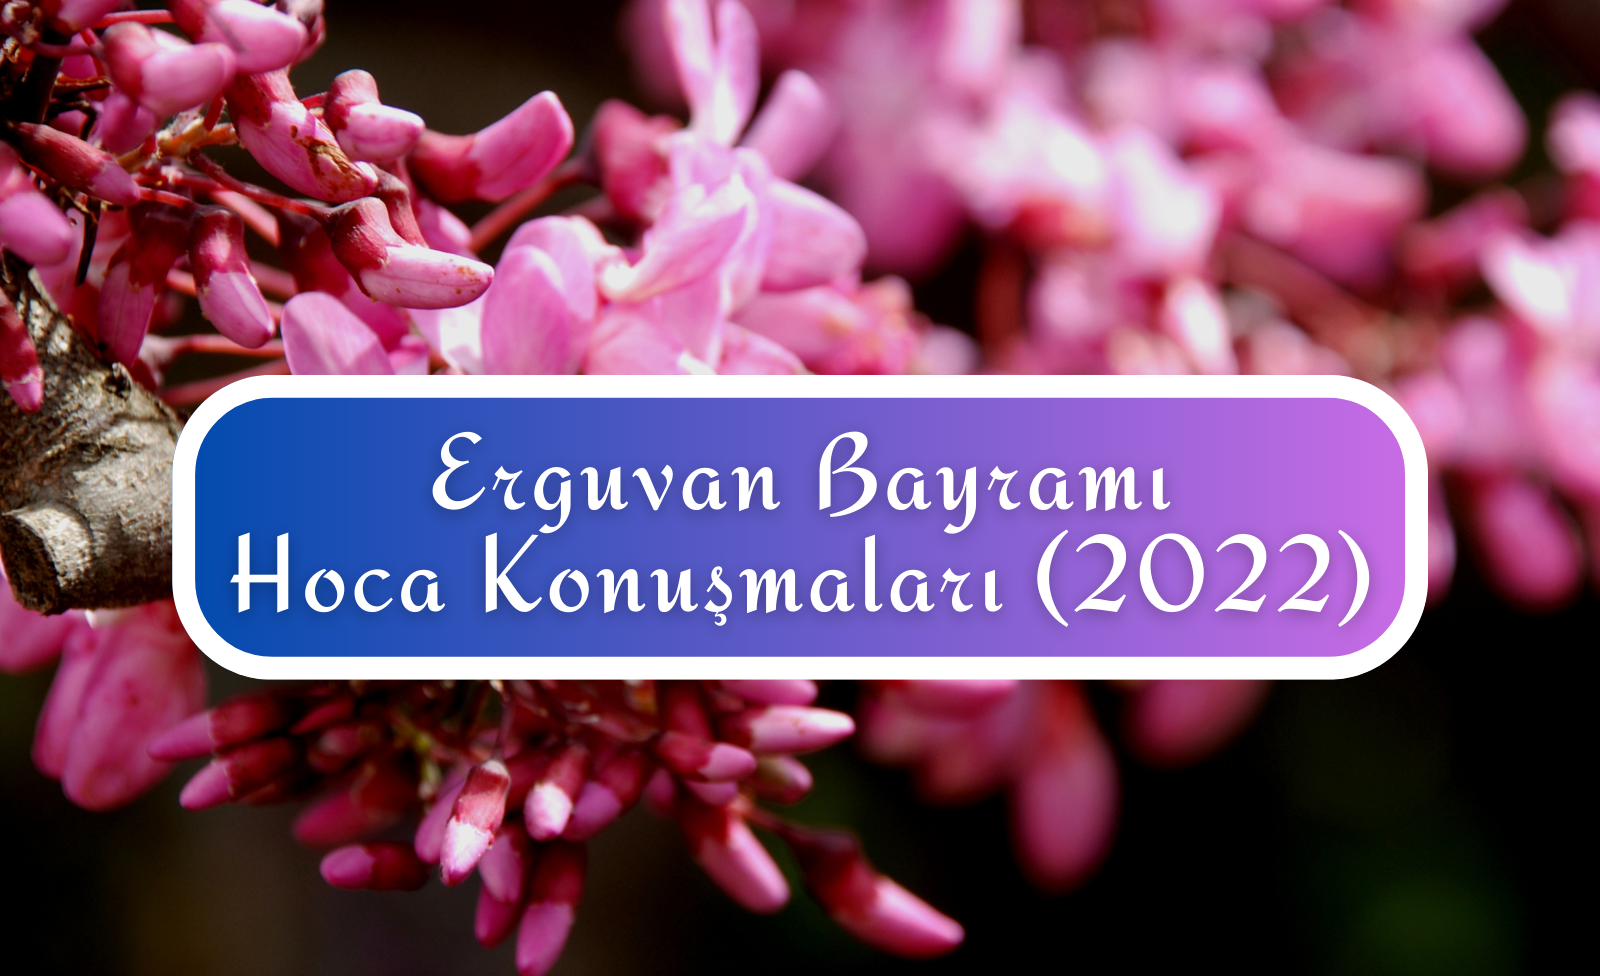 Erguvan Bayramı Hoca Konuşmaları (2022)